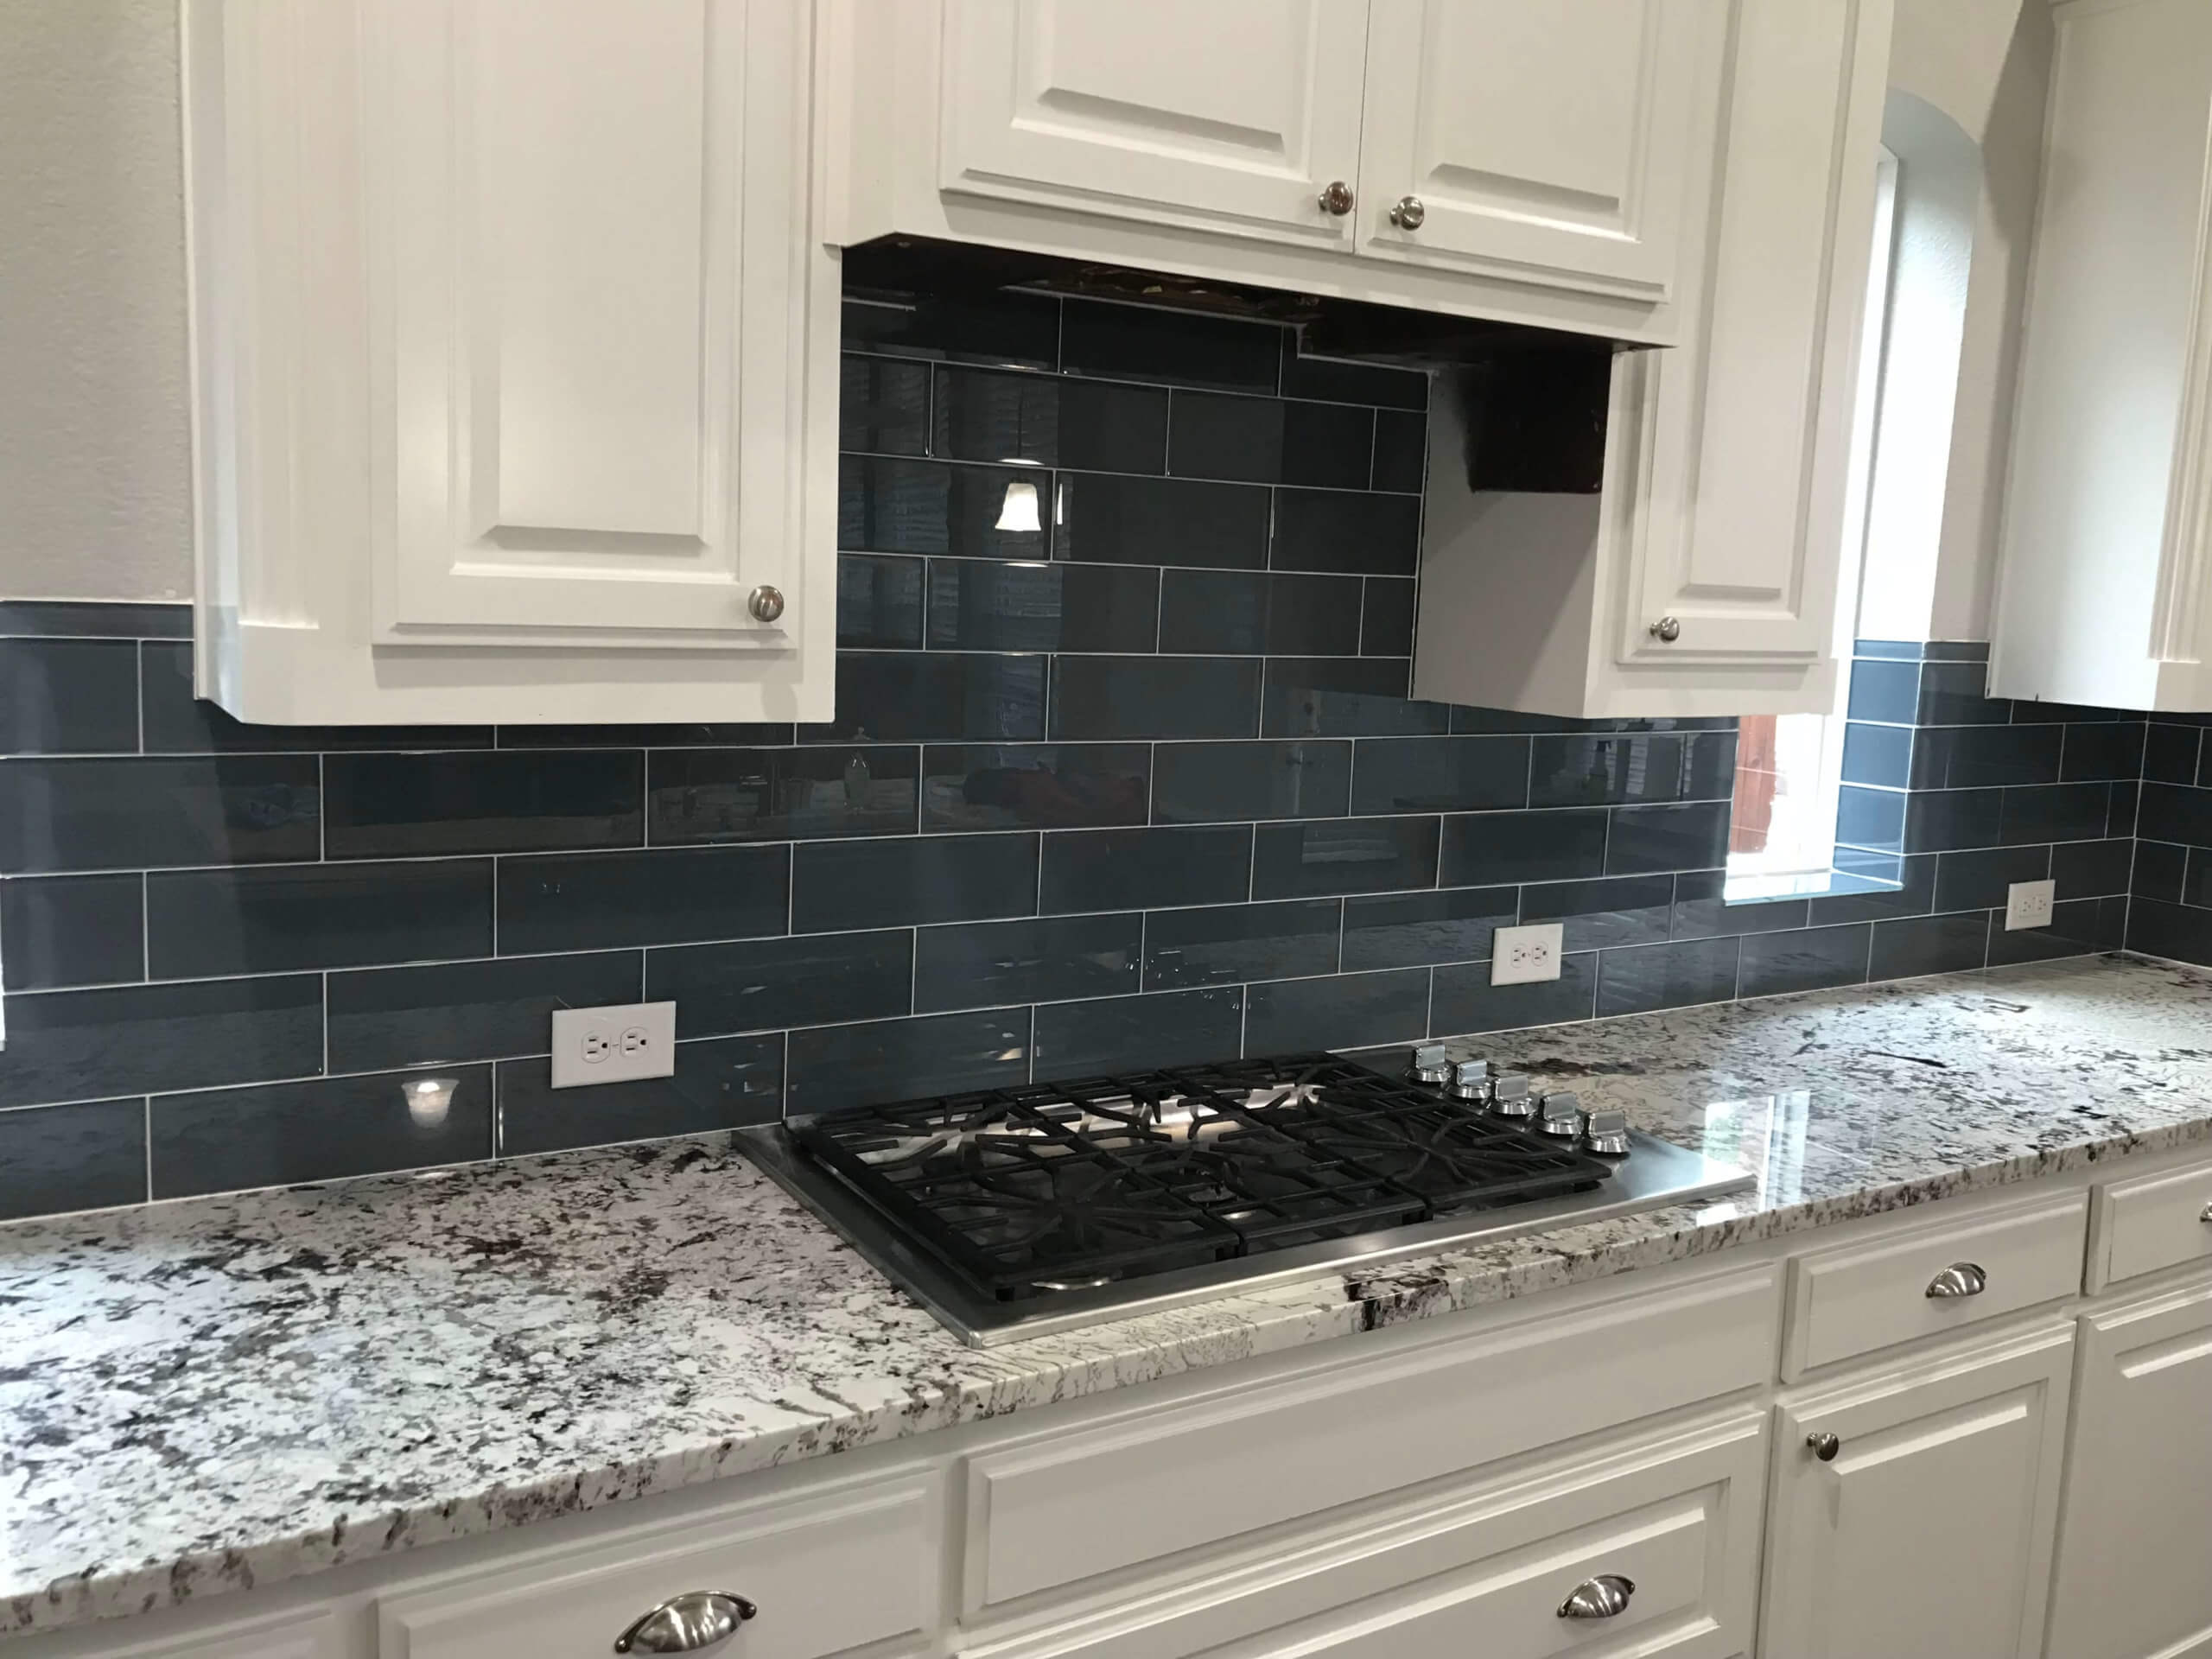 Best Tile For Kitchen Backsplash 2021, Ceramic Tile Kitchen Backsplash